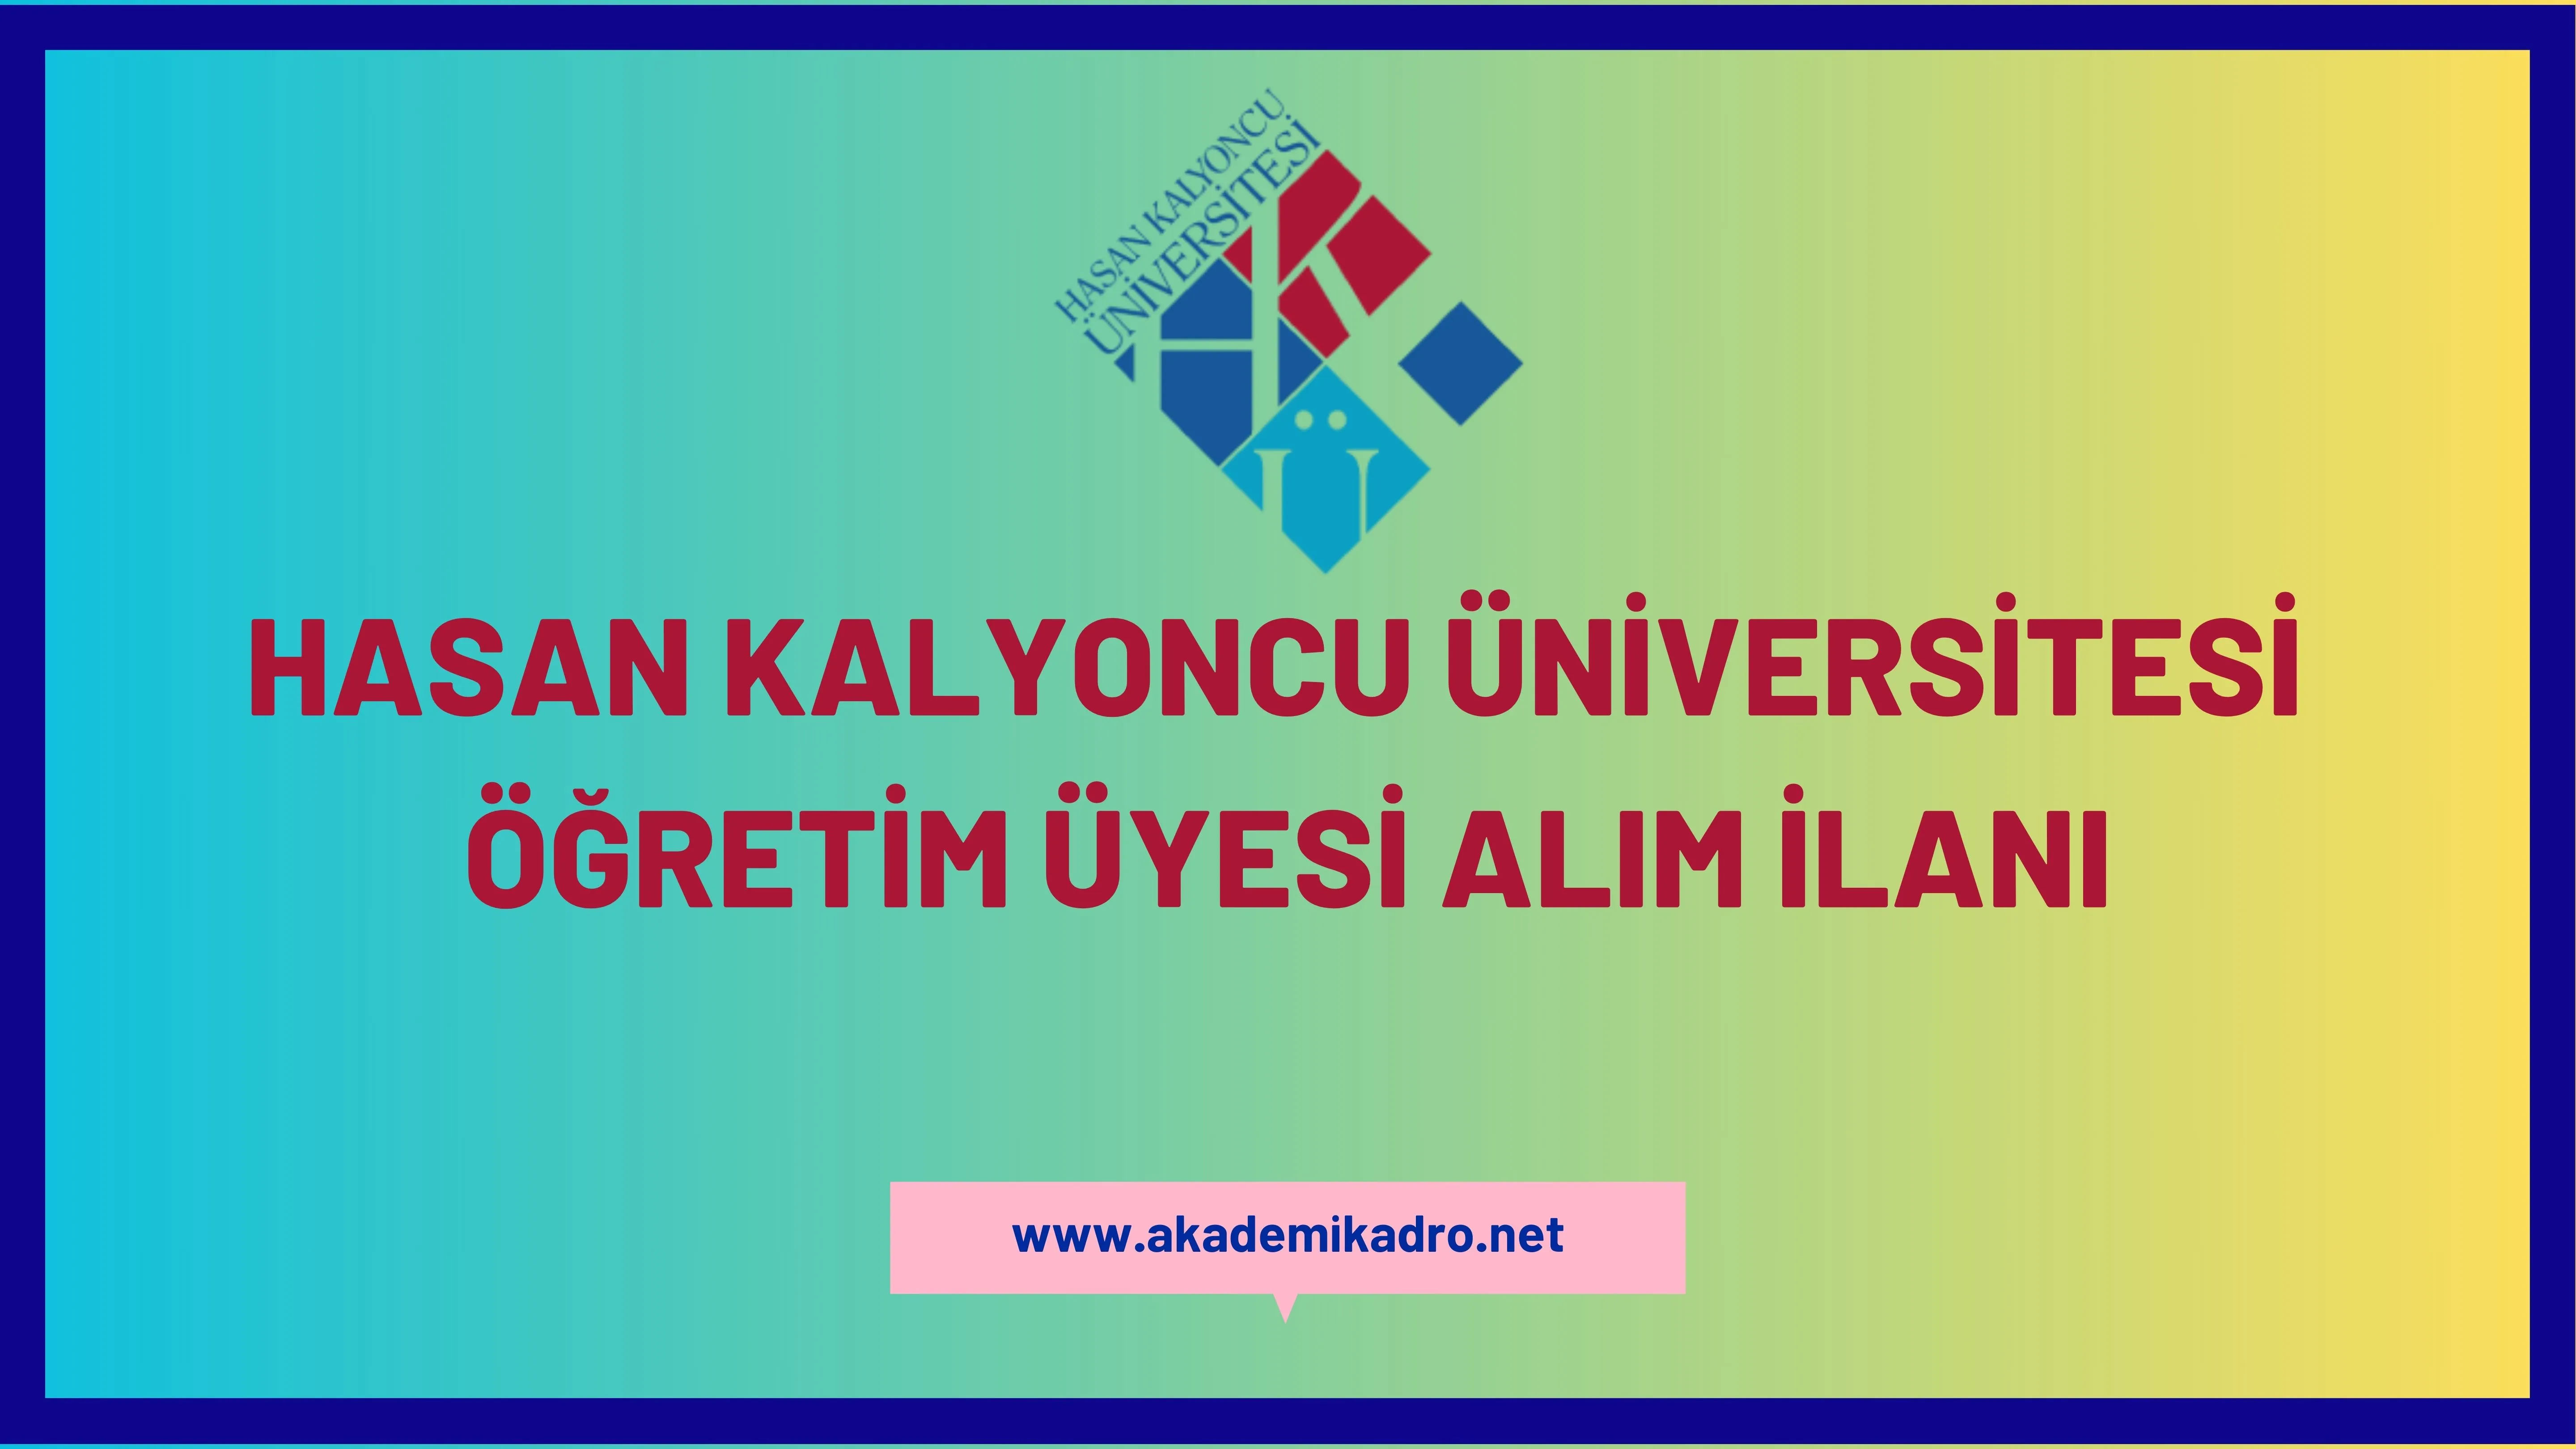 Hasan Kalyoncu Üniversitesi birçok alandan 31 öğretim üyesi alacak.